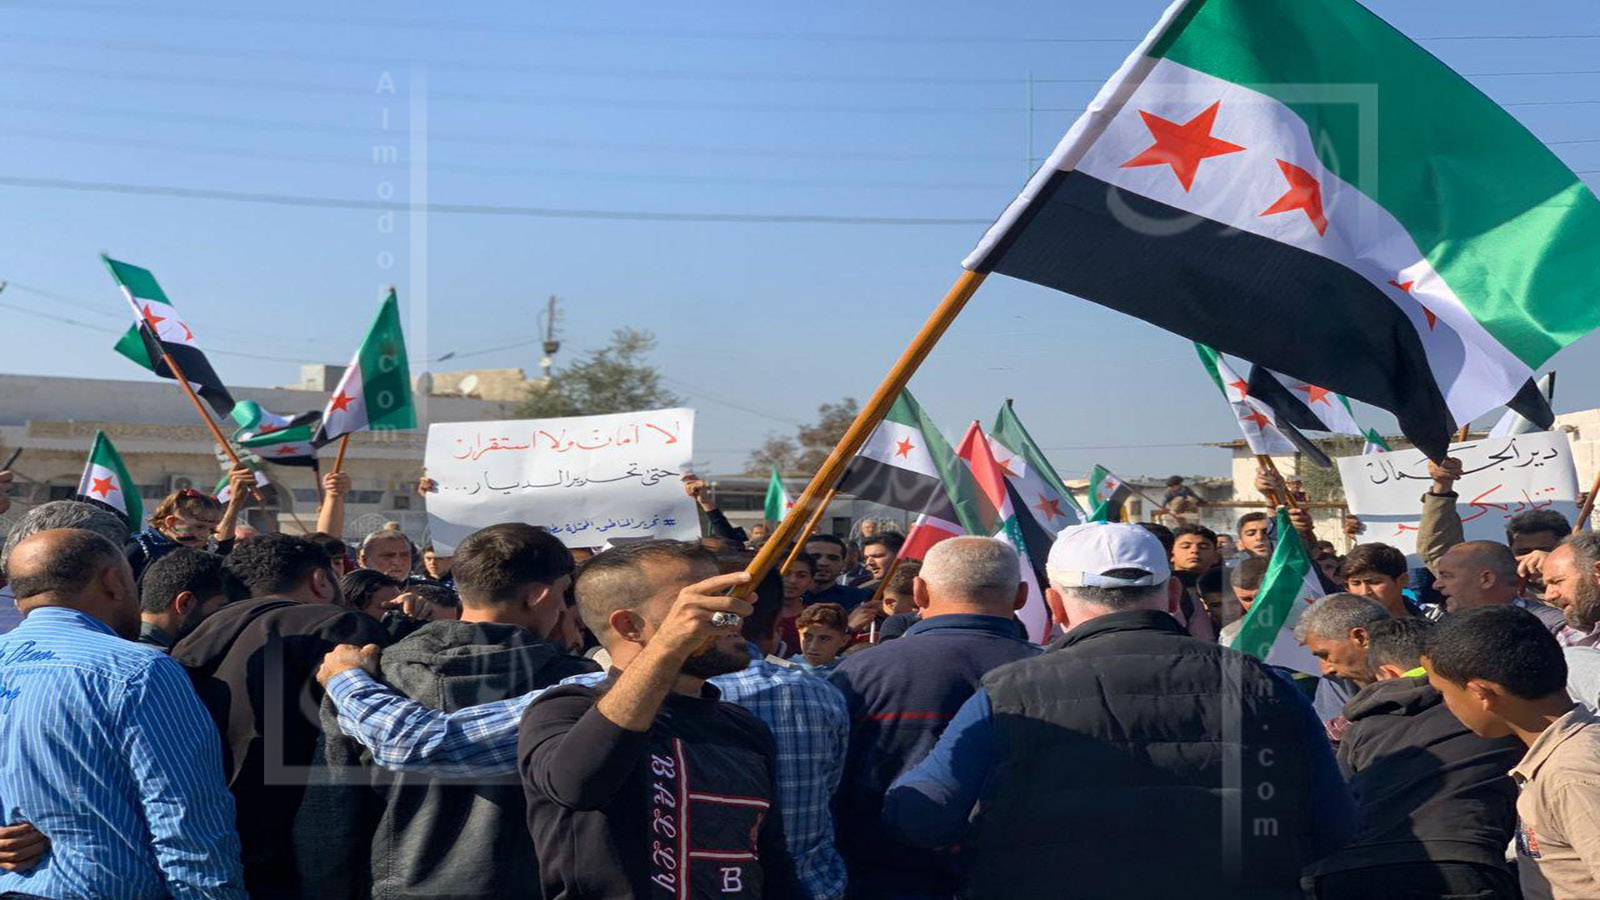 ادلب وحلب: مظاهرات ضد النظام و"وحدات الحماية" و"تحرير الشام"